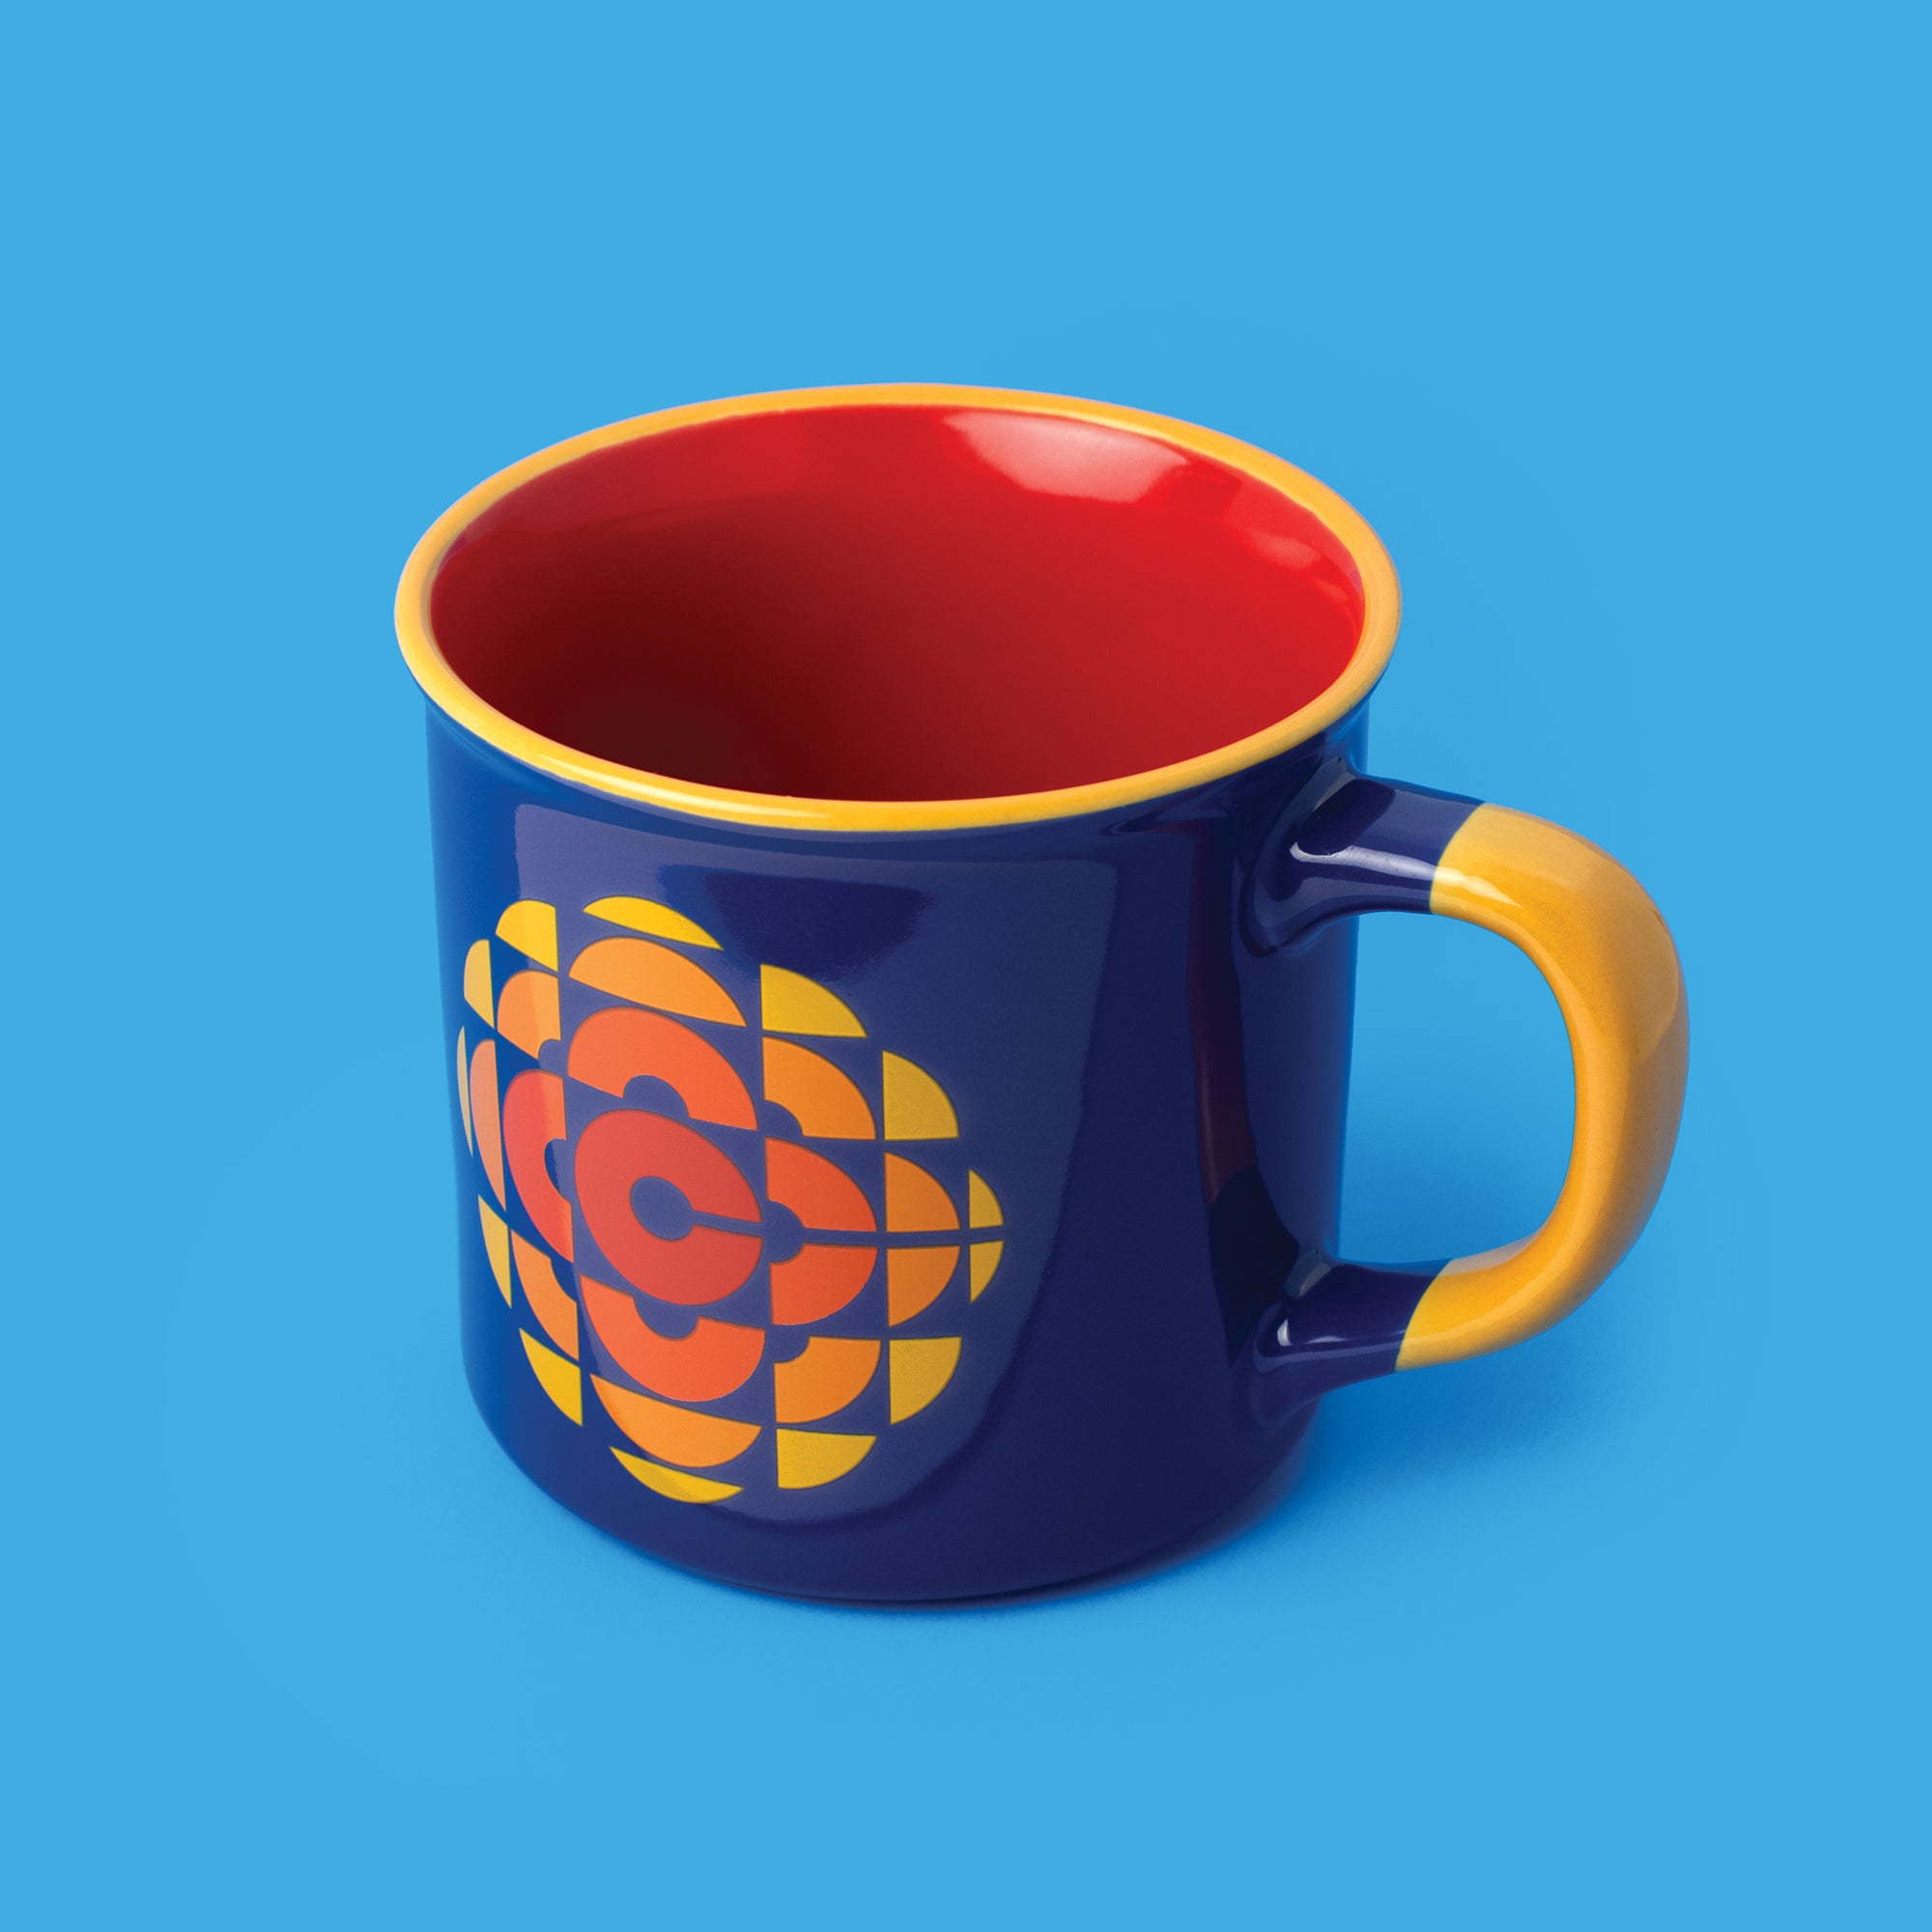 CBC Retro Logo Mug - Main and Local